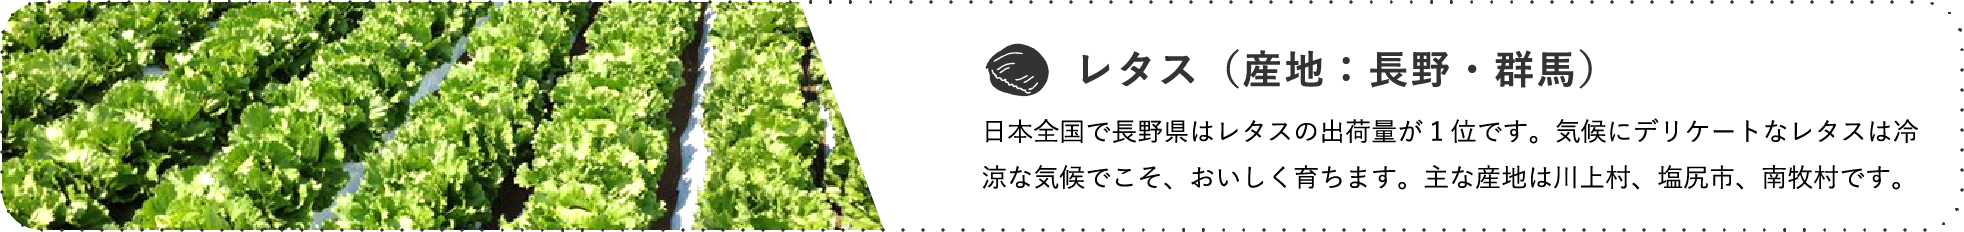 レタス（産地：長野・群馬） / 日本全国で長野県はレタスの出荷量が1位です。気候にデリケートなレタスは冷涼な気候でこそ、おいしく育ちます。主な産地は川上村、塩尻市、南牧村です。